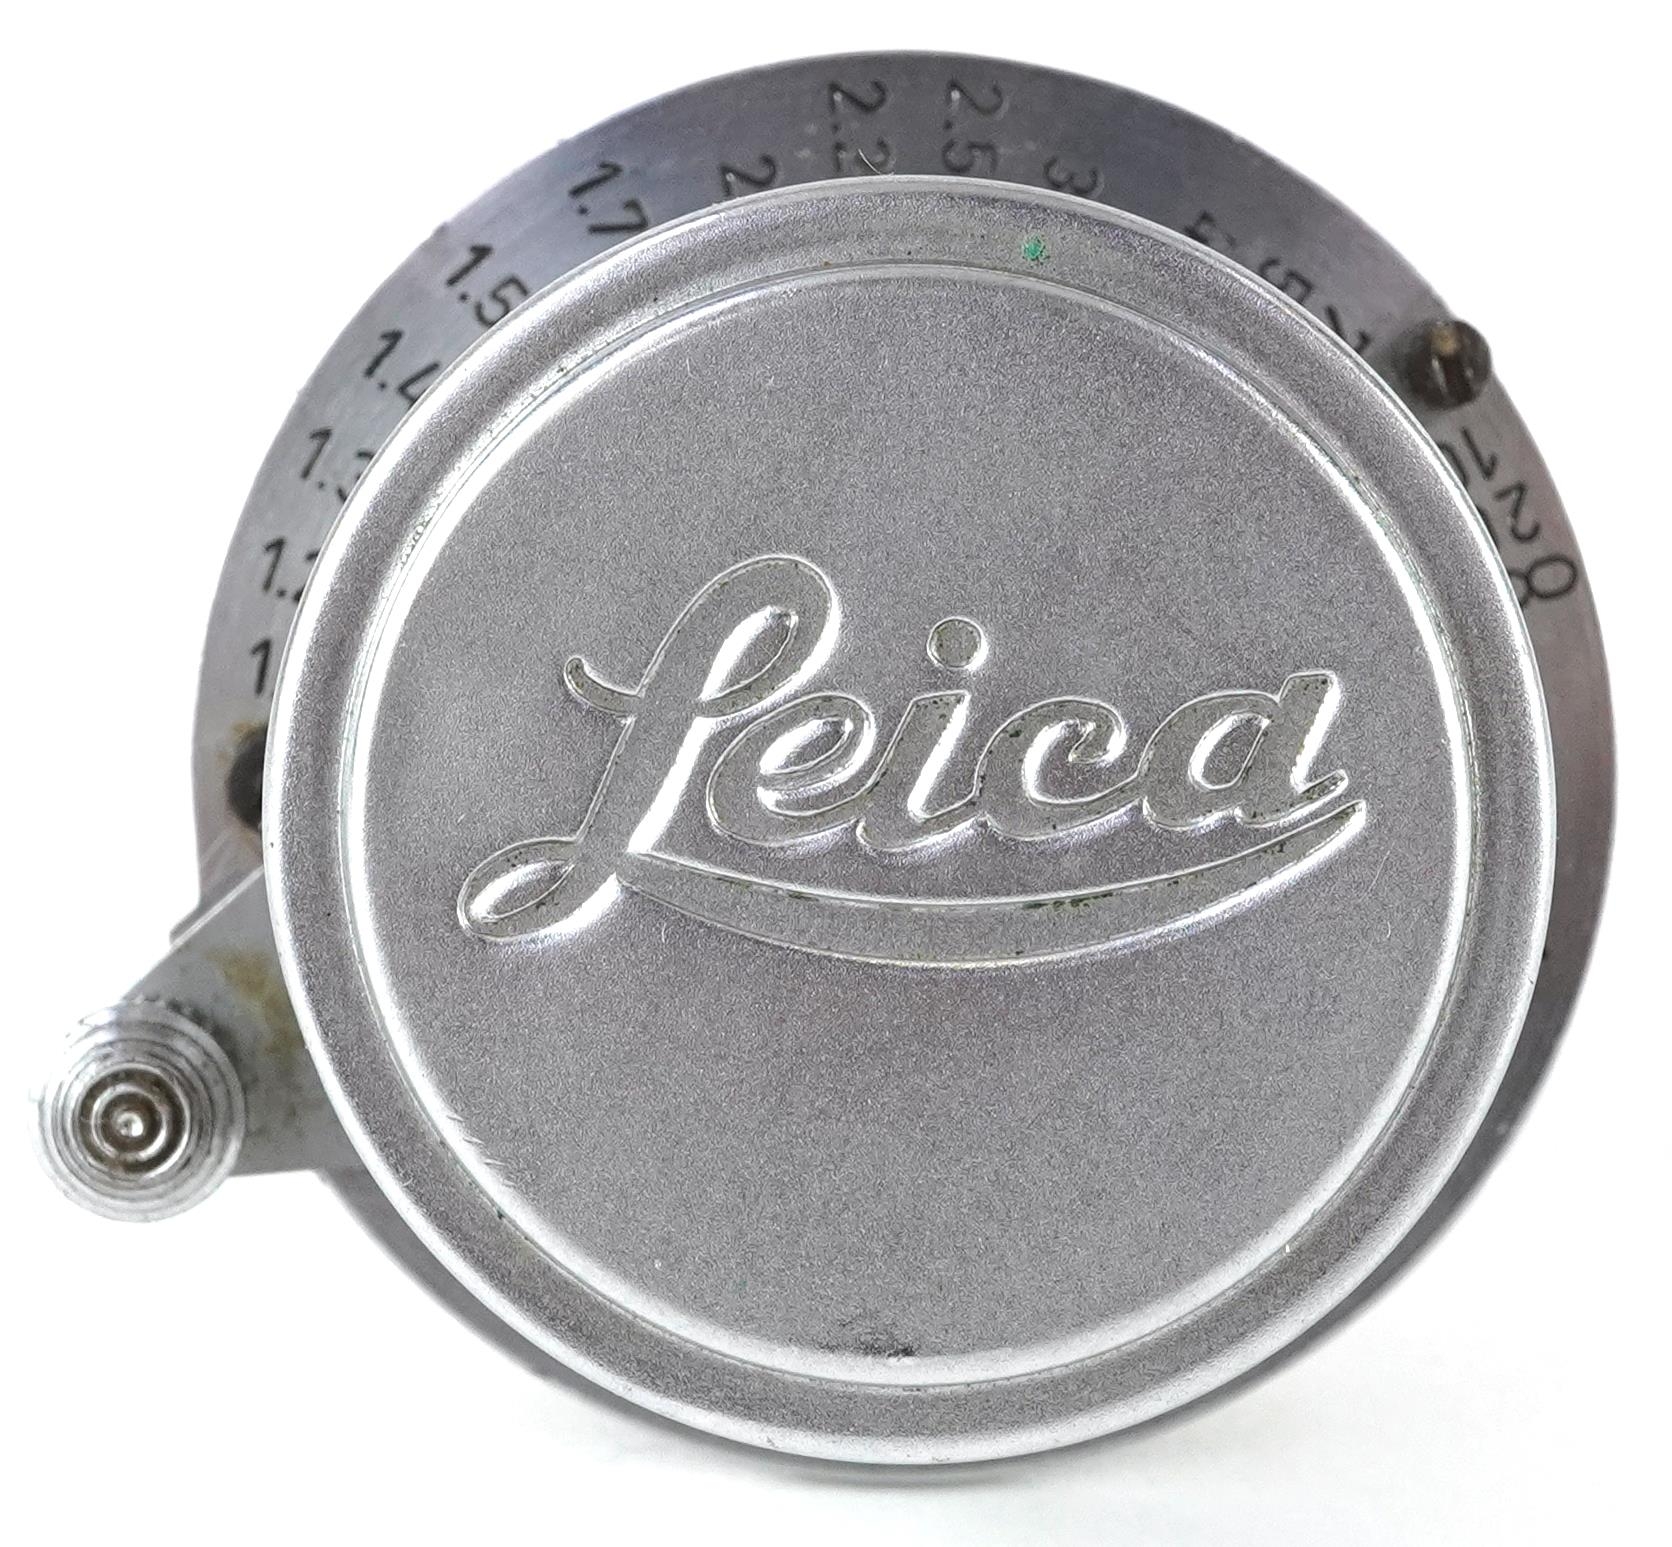 Leica Ernst Leitz Summaron F=3.5cm 1:3.5 camera lens, 5cm in diameter - Image 2 of 3